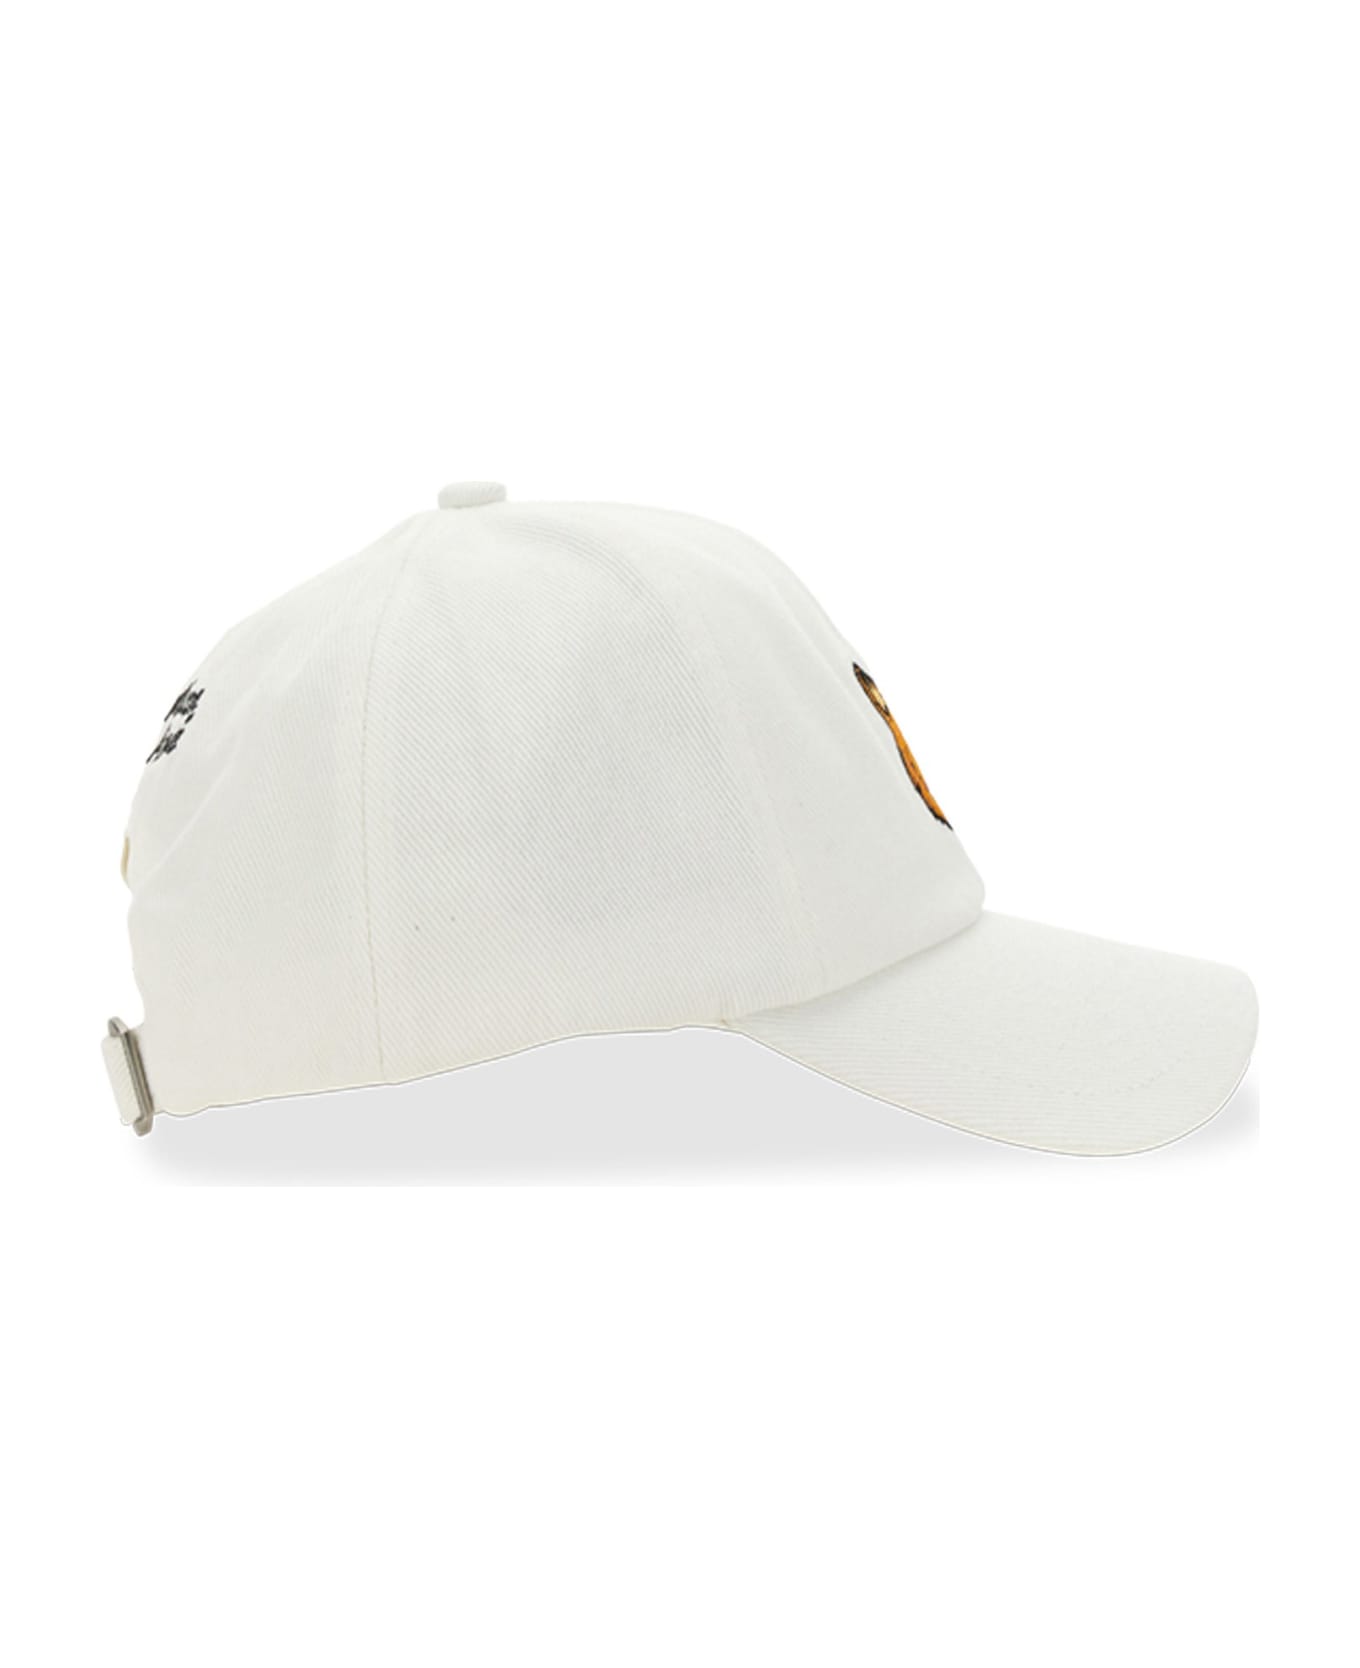 Maison Kitsuné Fox Head Baseball Hat - White 帽子